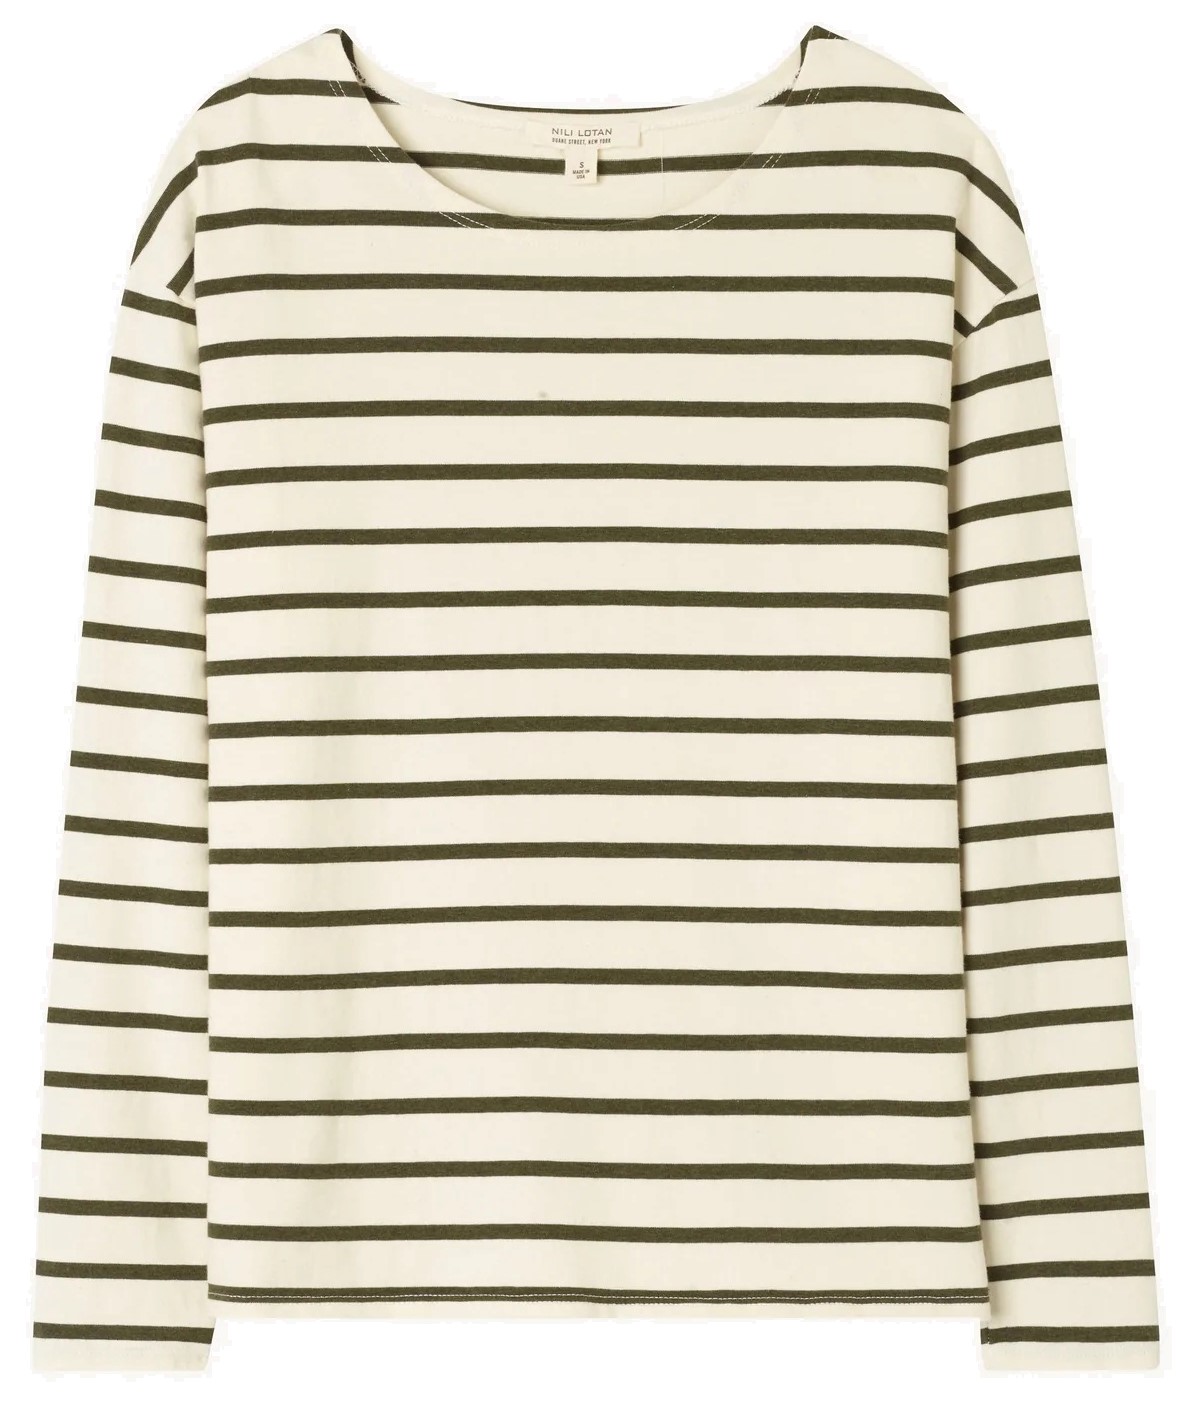 Nili Lotan Arlette Longsleeve Sweater in Olive Stripes XS